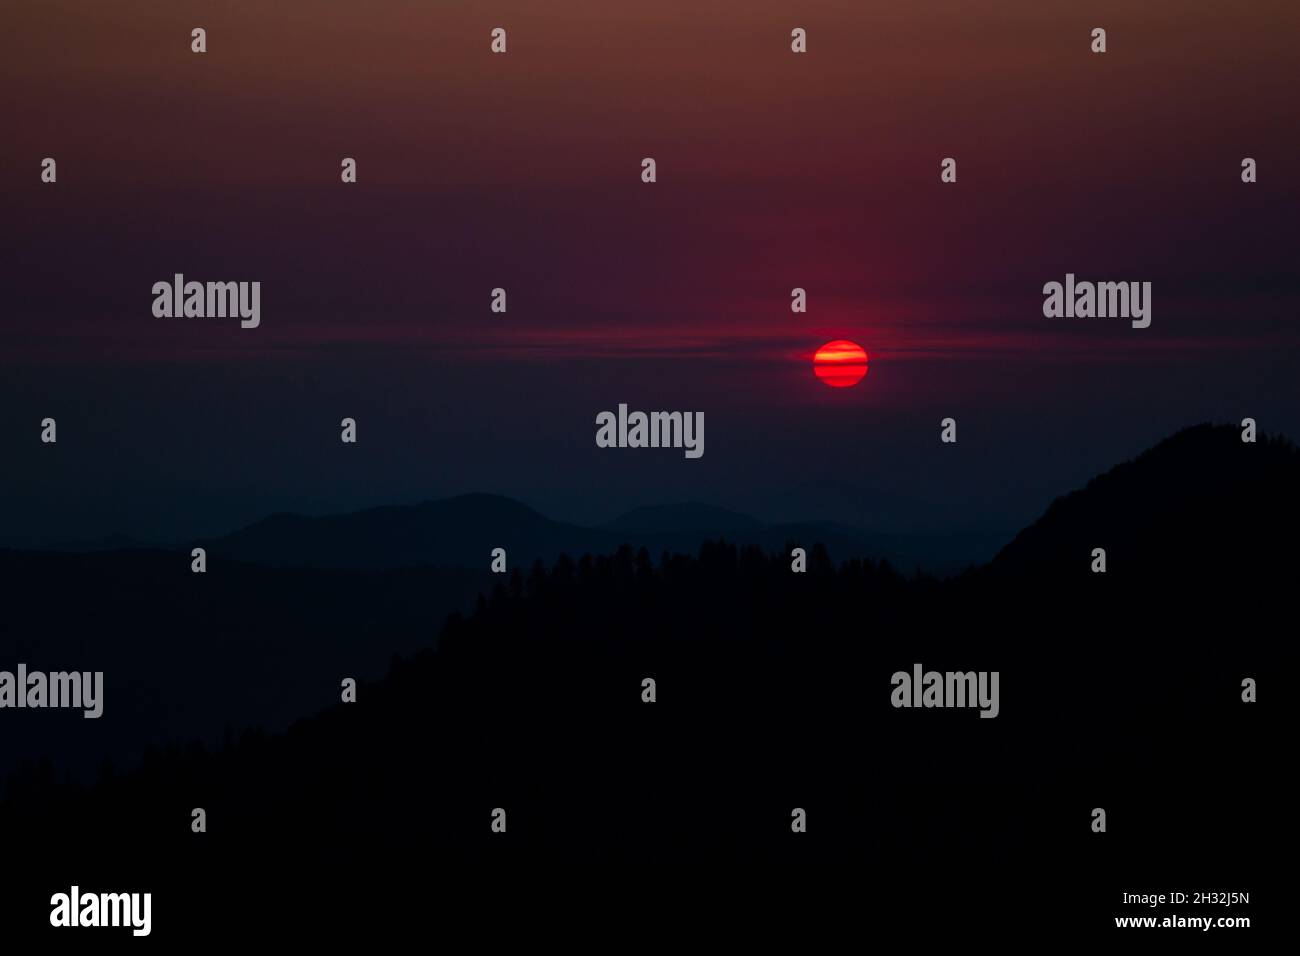 Landschaftlich schöner Sonnenuntergang über den Bergen, die von Wald überwuchert sind, schwarze Silhouette des Berges, rote Sonne, dunkler Himmel, Sonne im Moro Rock Sequoia NP teilweise verdunkelt Stockfoto